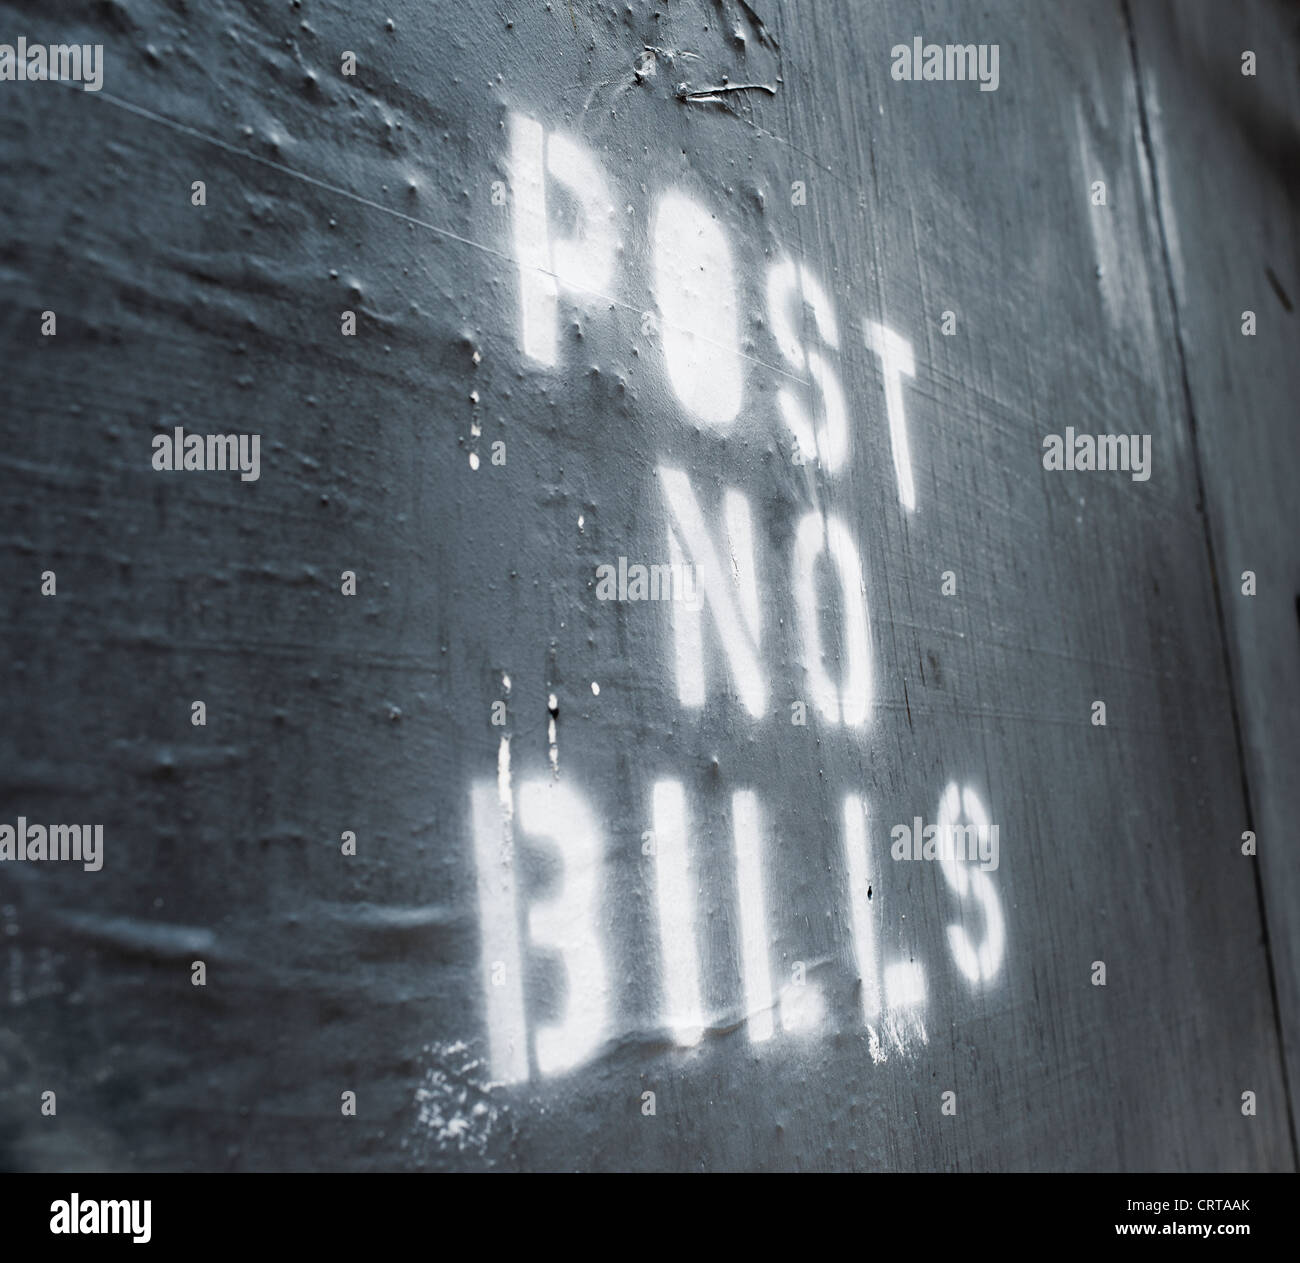 Worte "Post No Bills" auf einer alten Mauer gesprüht. Stockfoto